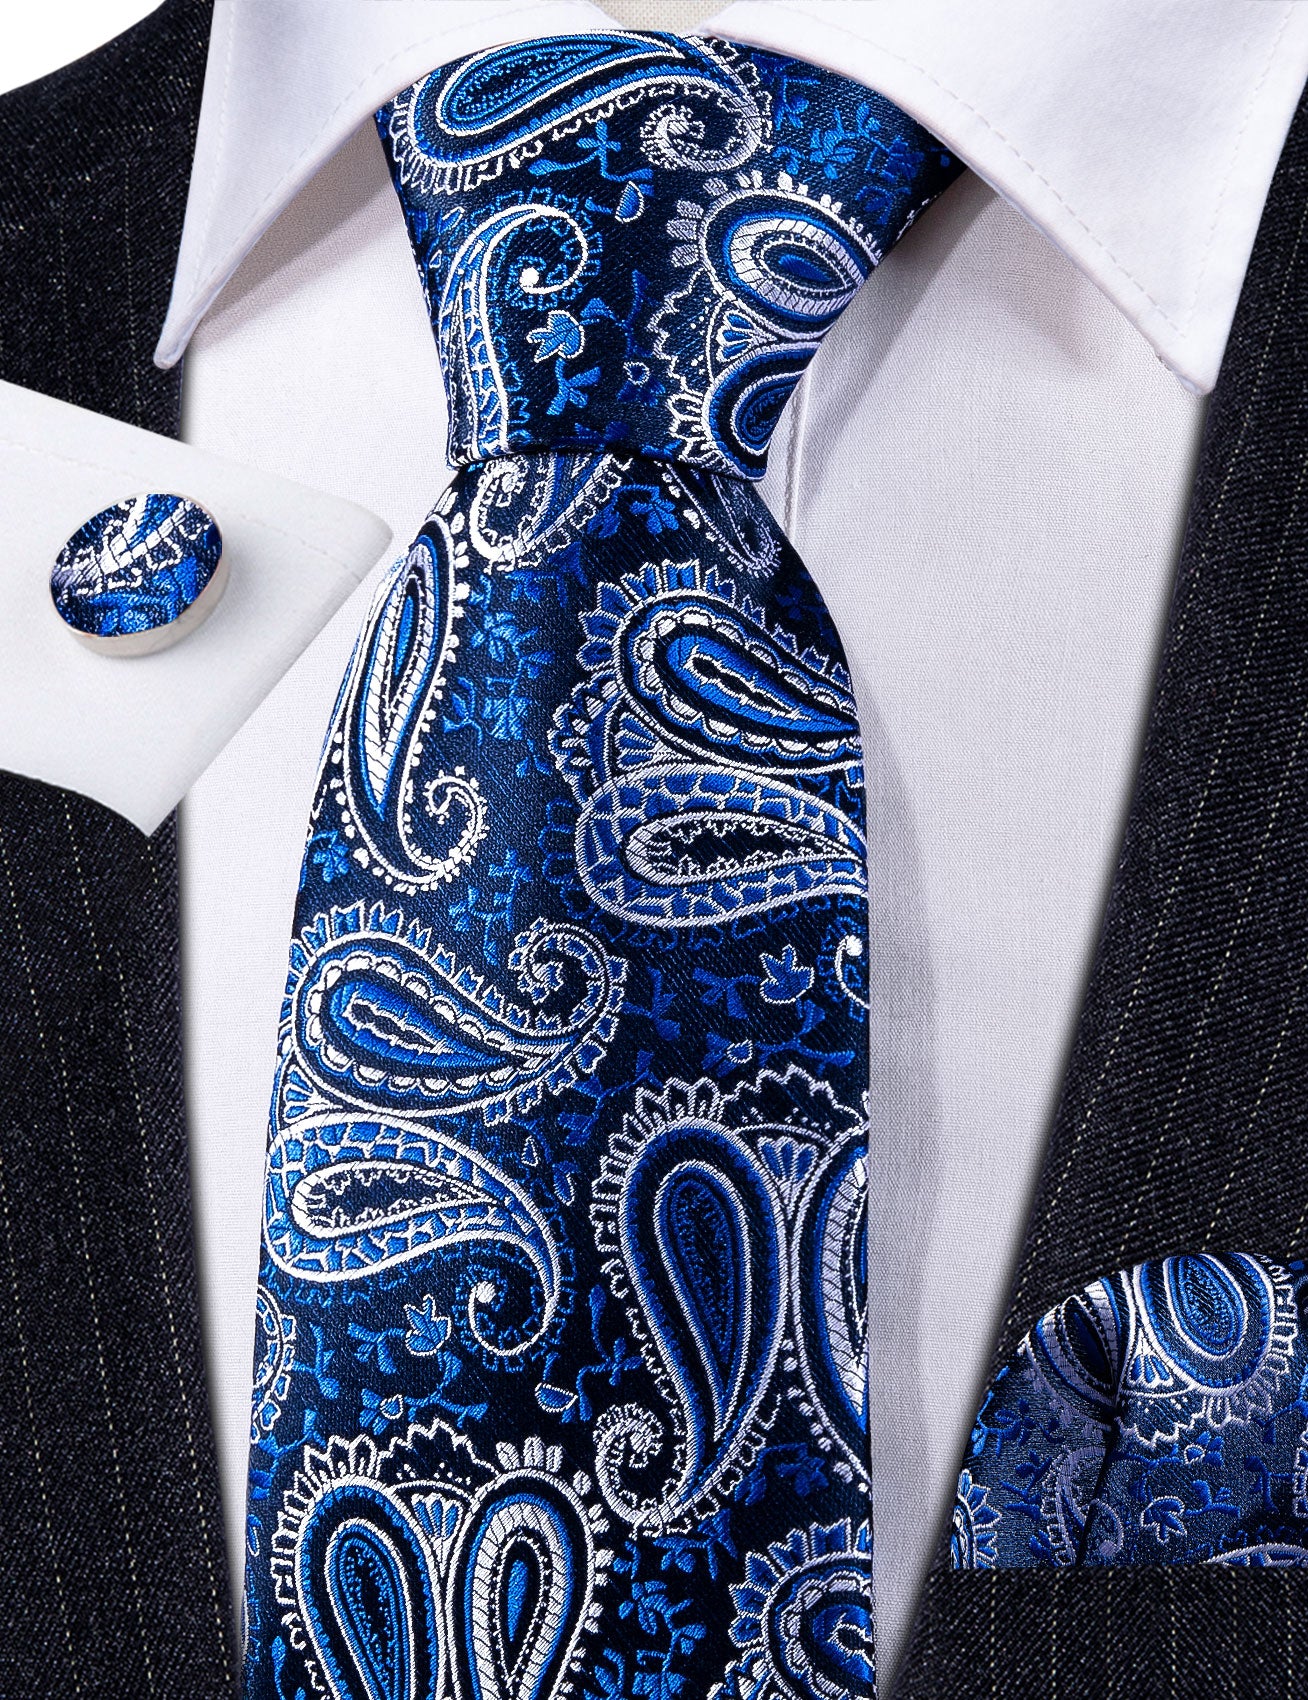 New Blue White Paisley Silk Necktie Hanky Cufflinks Set